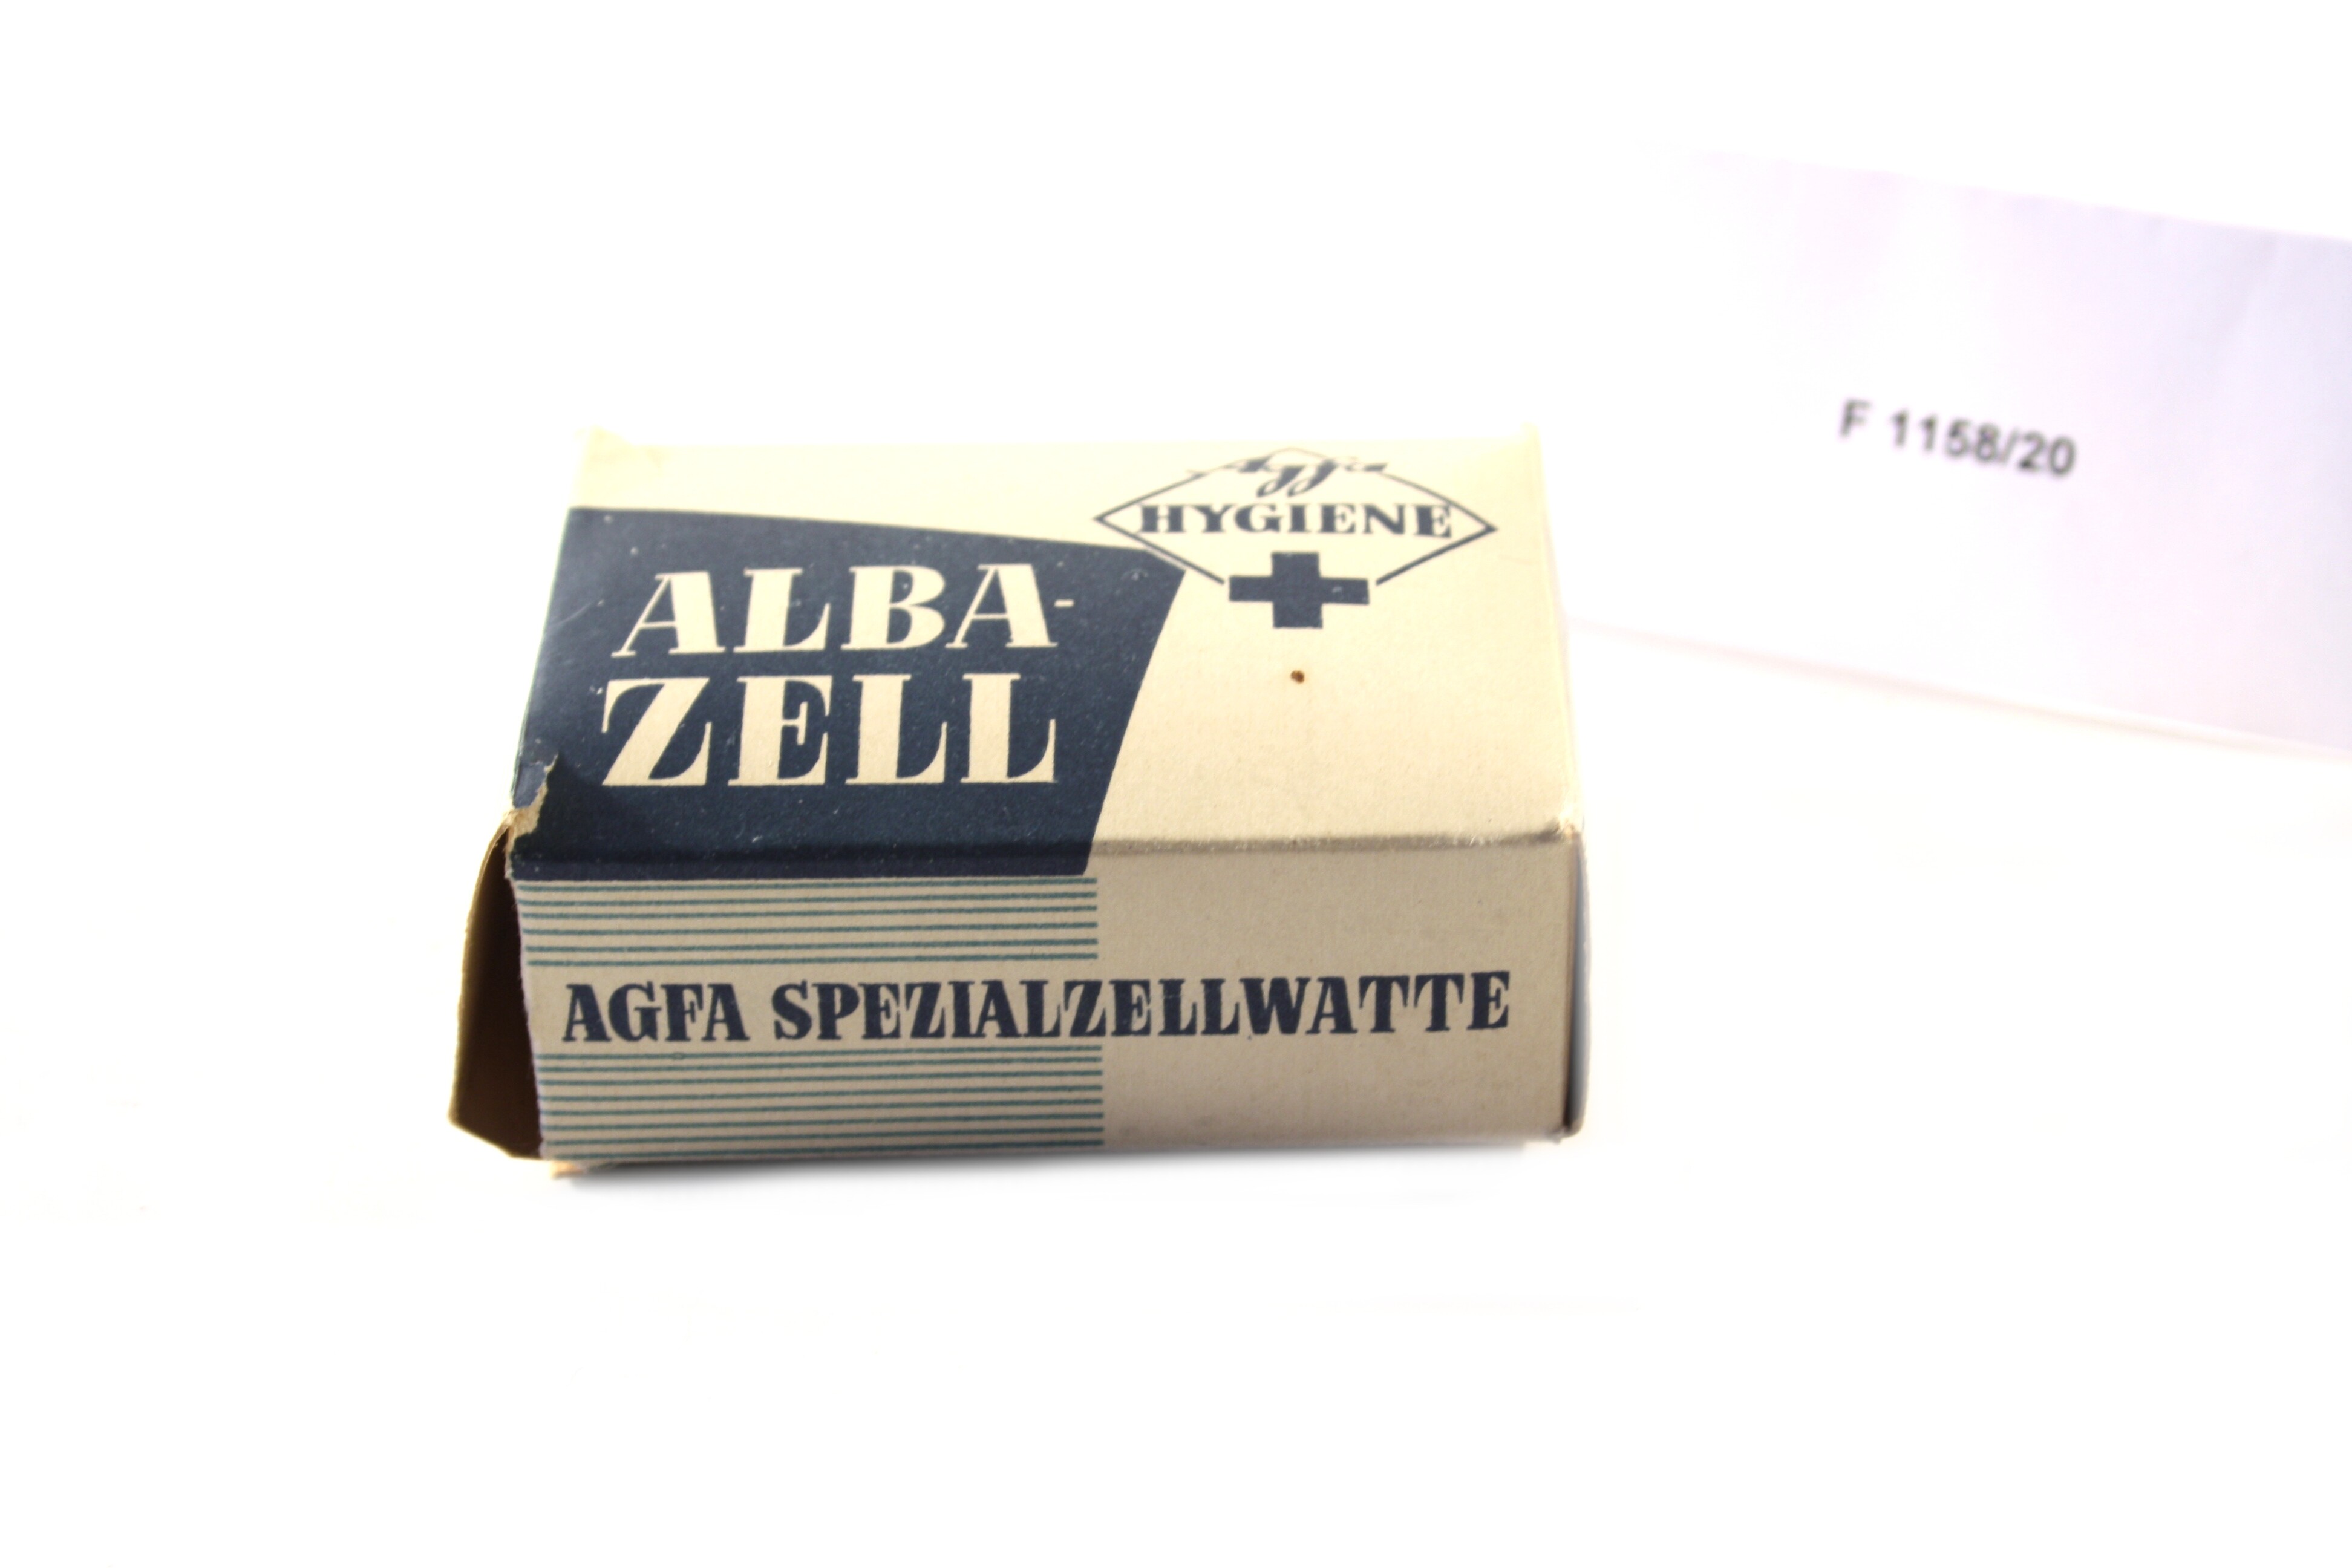 Watte Alba-Zell (Industrie- und Filmmuseum Wolfen CC BY-NC-SA)